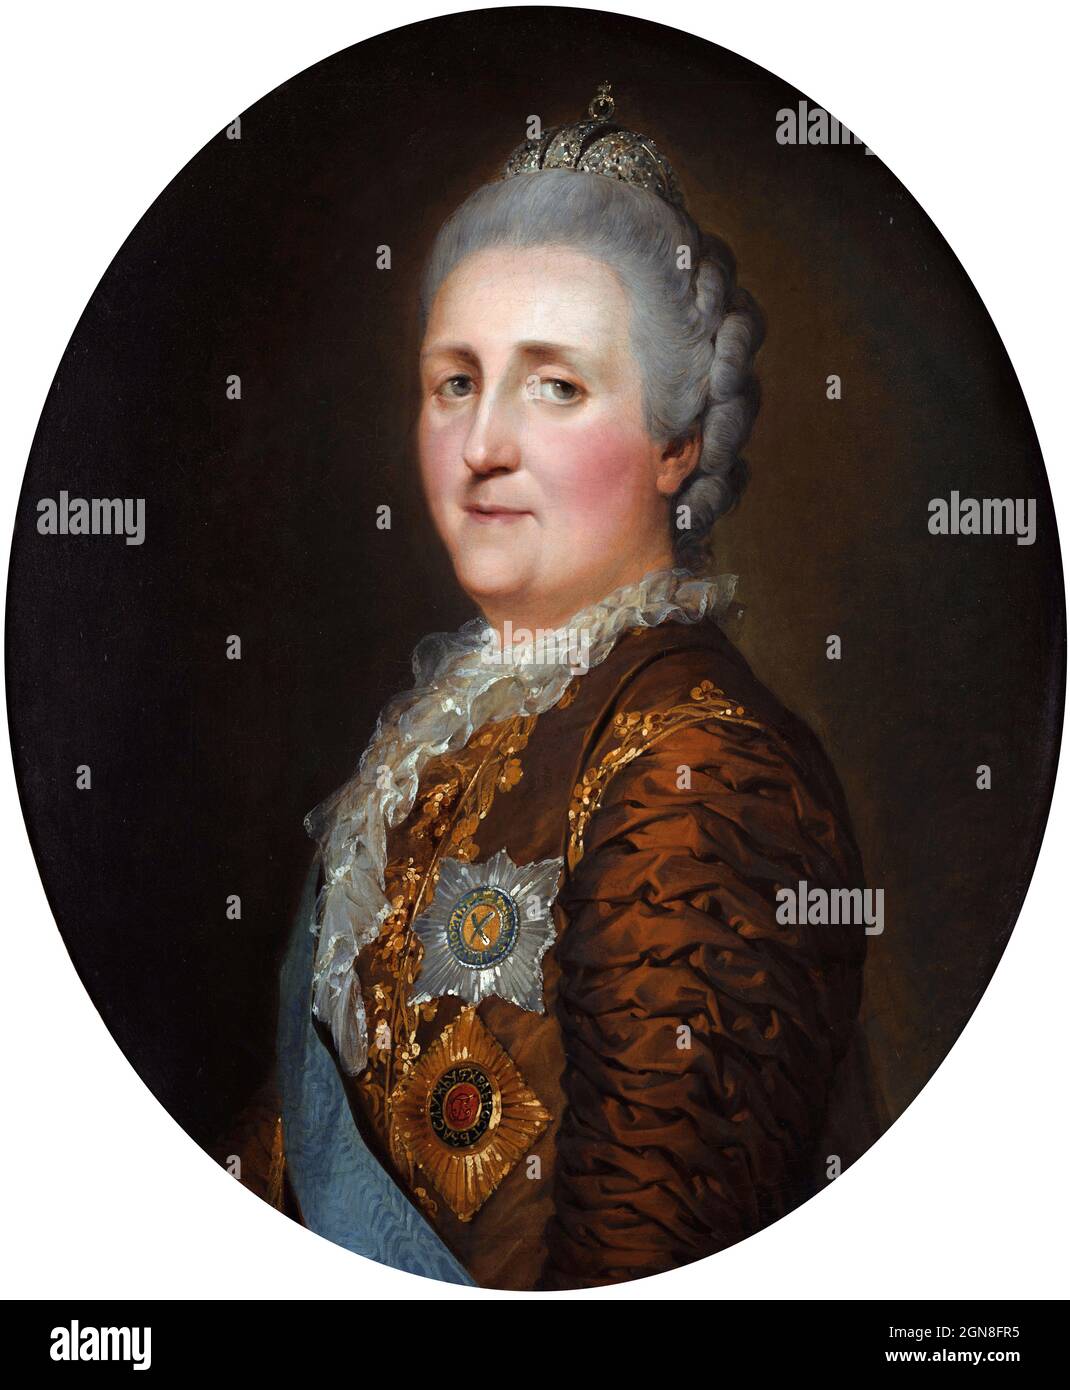 Caterina II di Russia (1729-1796), conosciuta come Caterina la Grande, era la più lunga leader della Russia, regnando dal 1762 fino alla sua morte nel 1796. Ritratto di Peter Falconet, olio su tela, 1773 Foto Stock